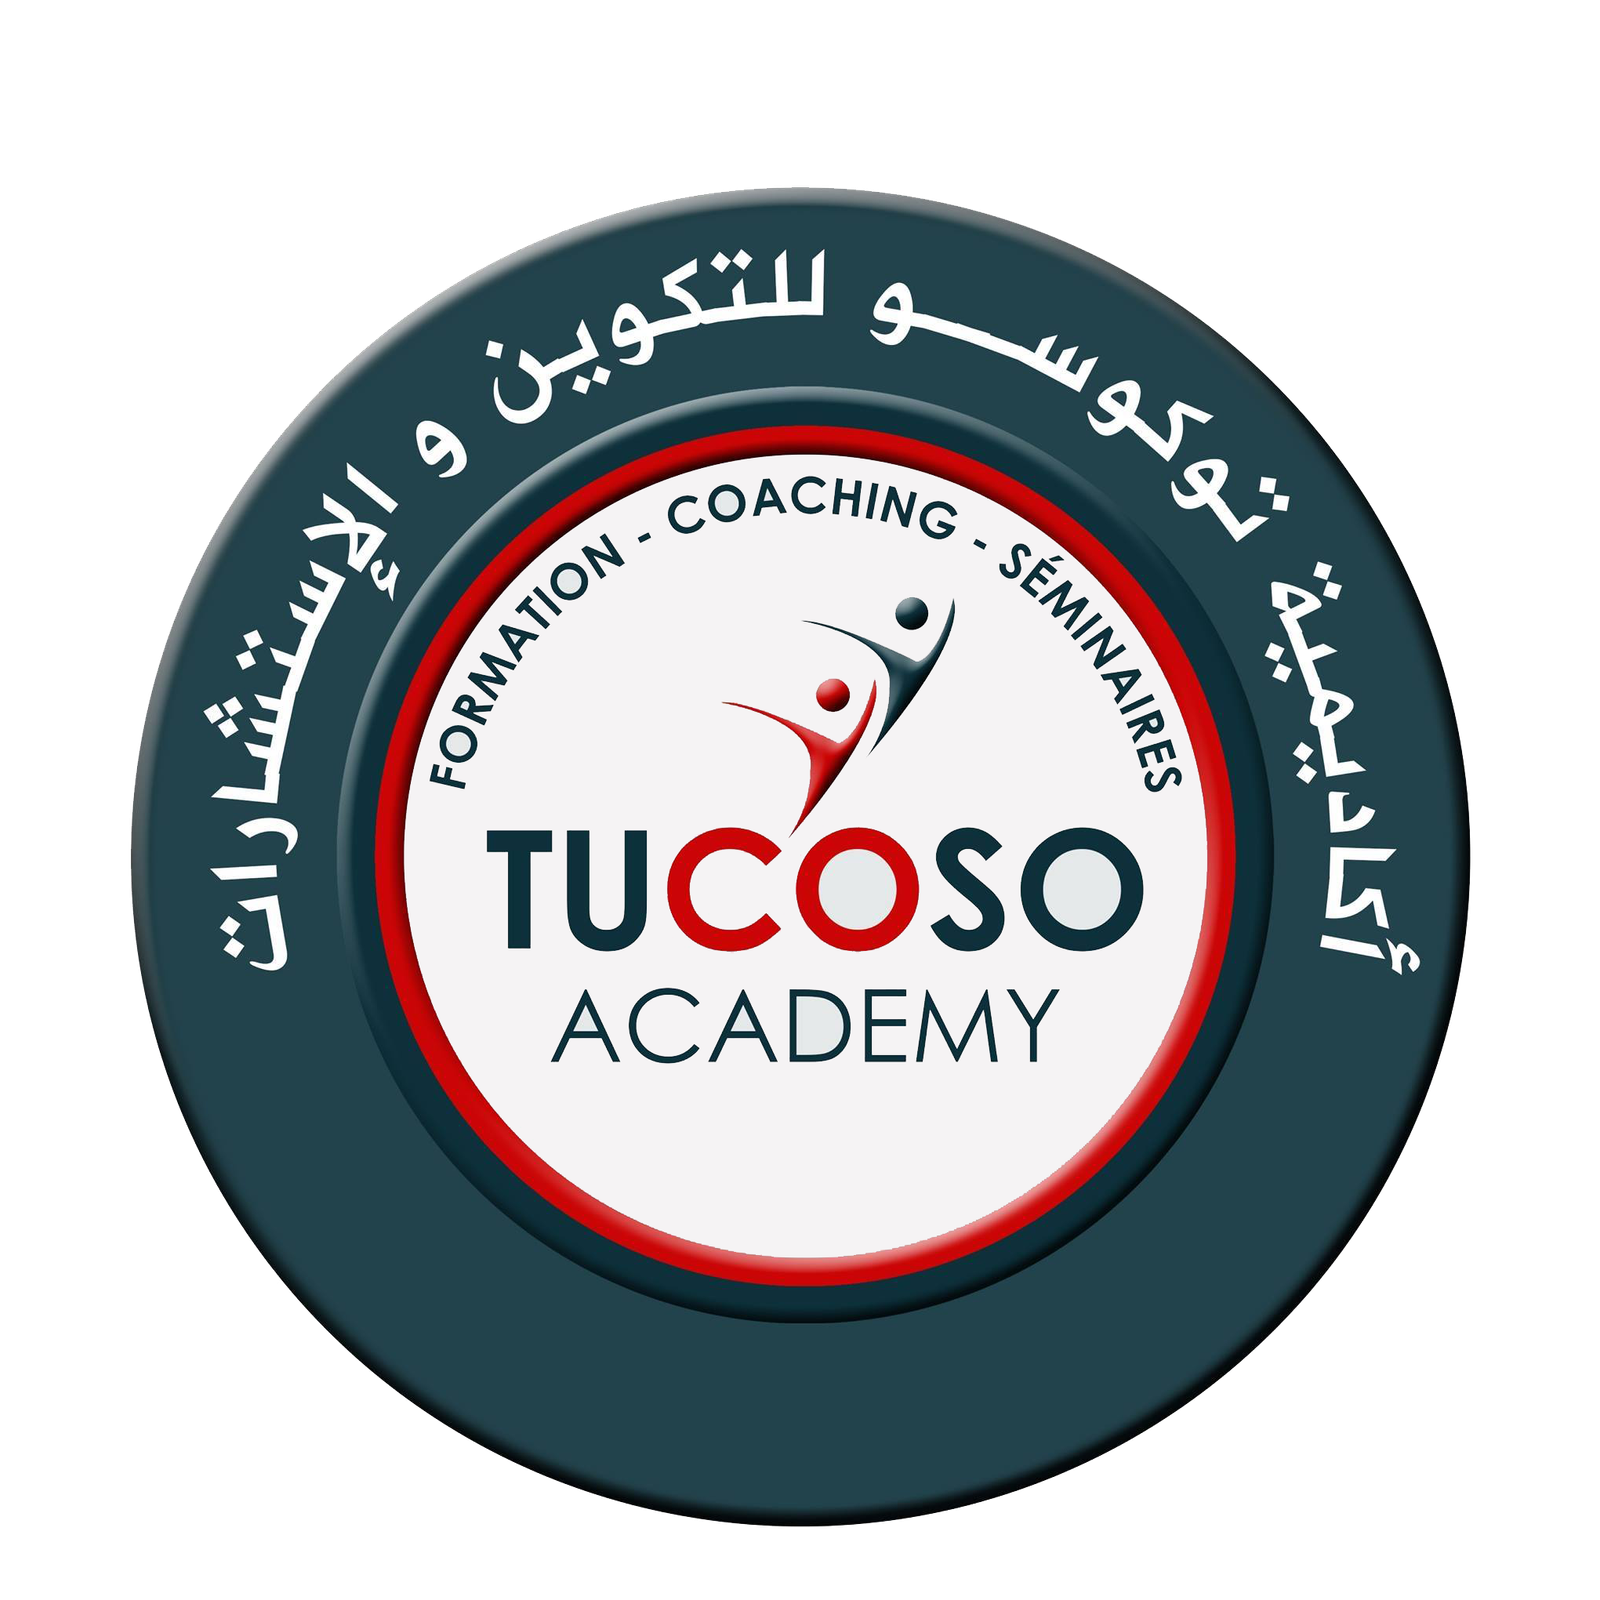 Avantages de rejoindre l'Académie Tucoso pour acquérir de nouvelles compétences et accéder au marché du travail